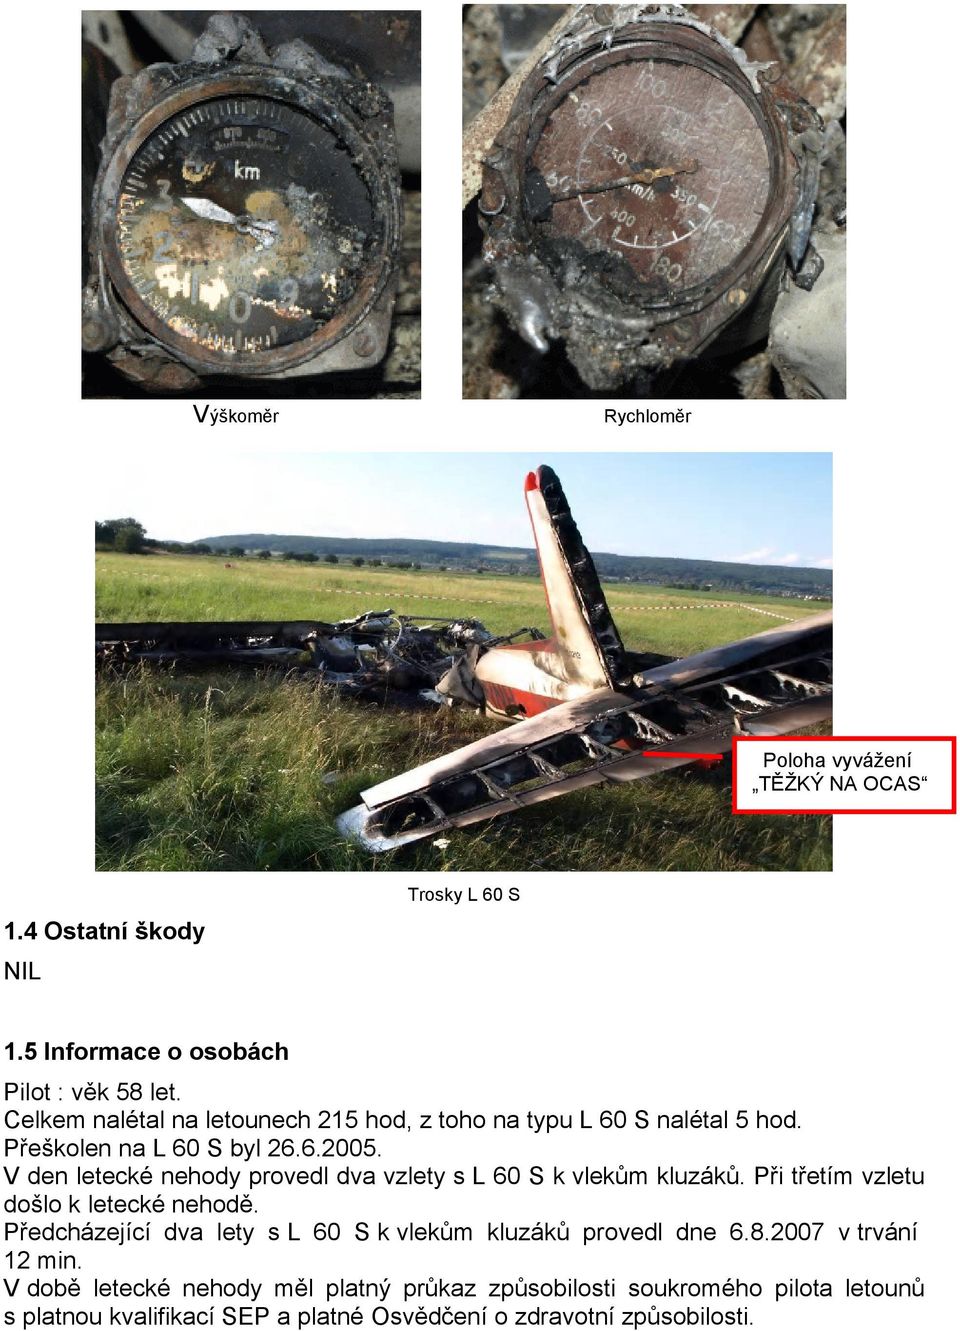 V den letecké nehody provedl dva vzlety s L 60 S k vlekům kluzáků. Při třetím vzletu došlo k letecké nehodě.